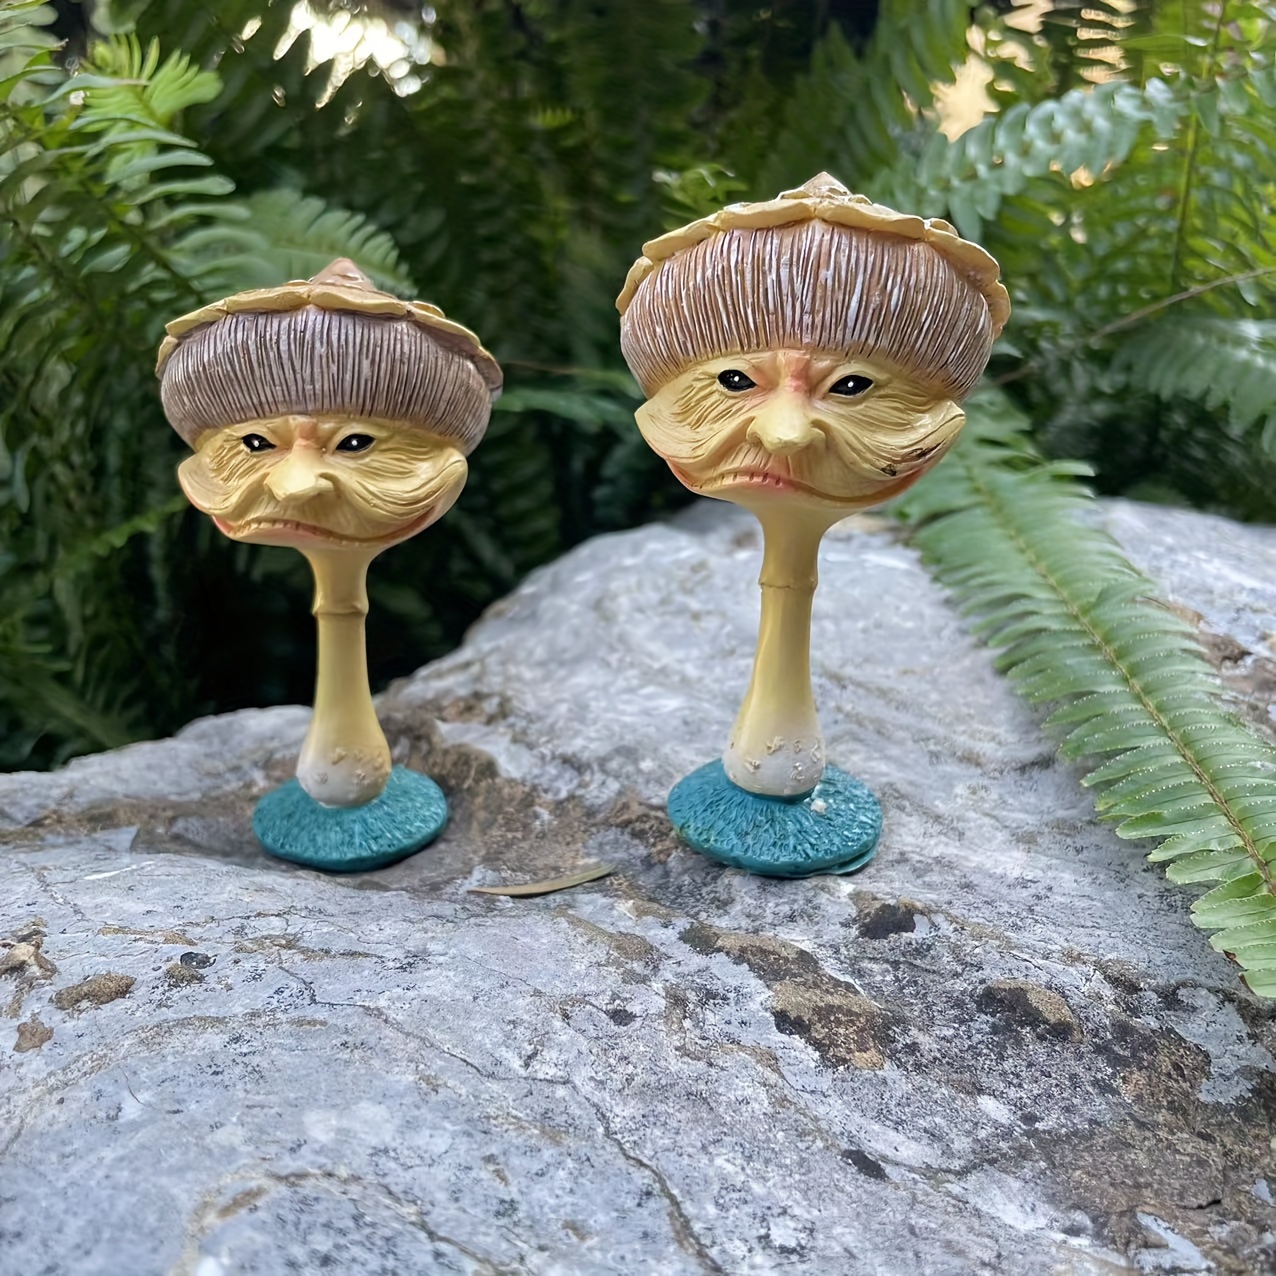 10pcs Garden Fake Mushroom Ornament Miniature Mushroom Figurines